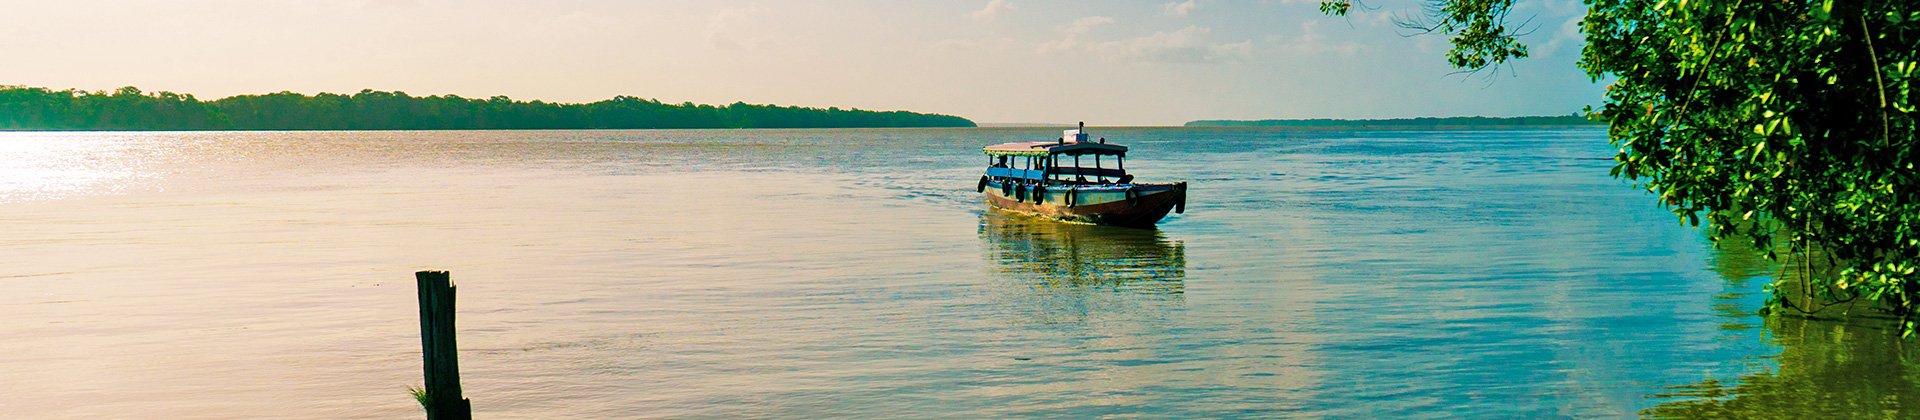 River Taxi, Suriname